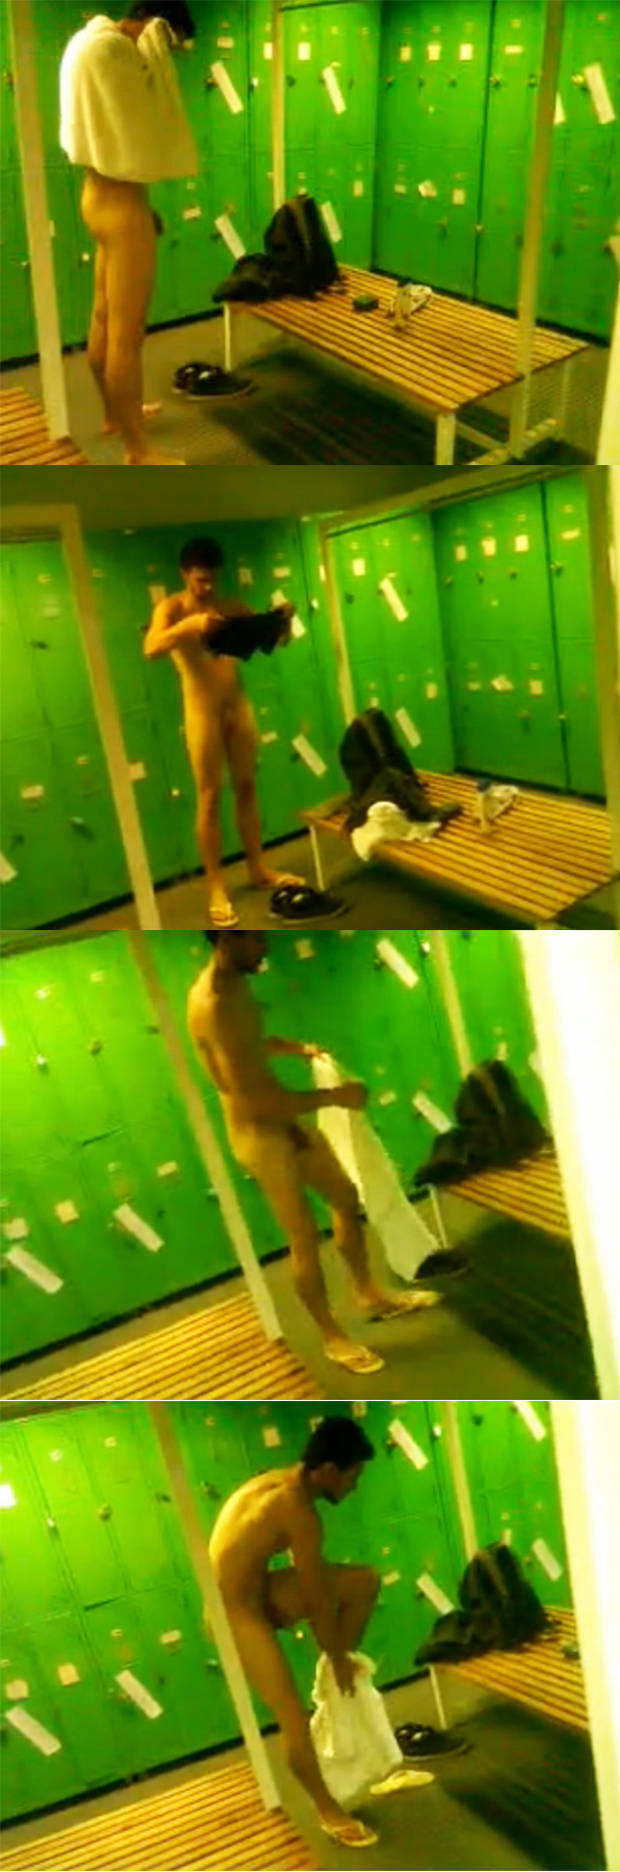 nude guy lockerroom